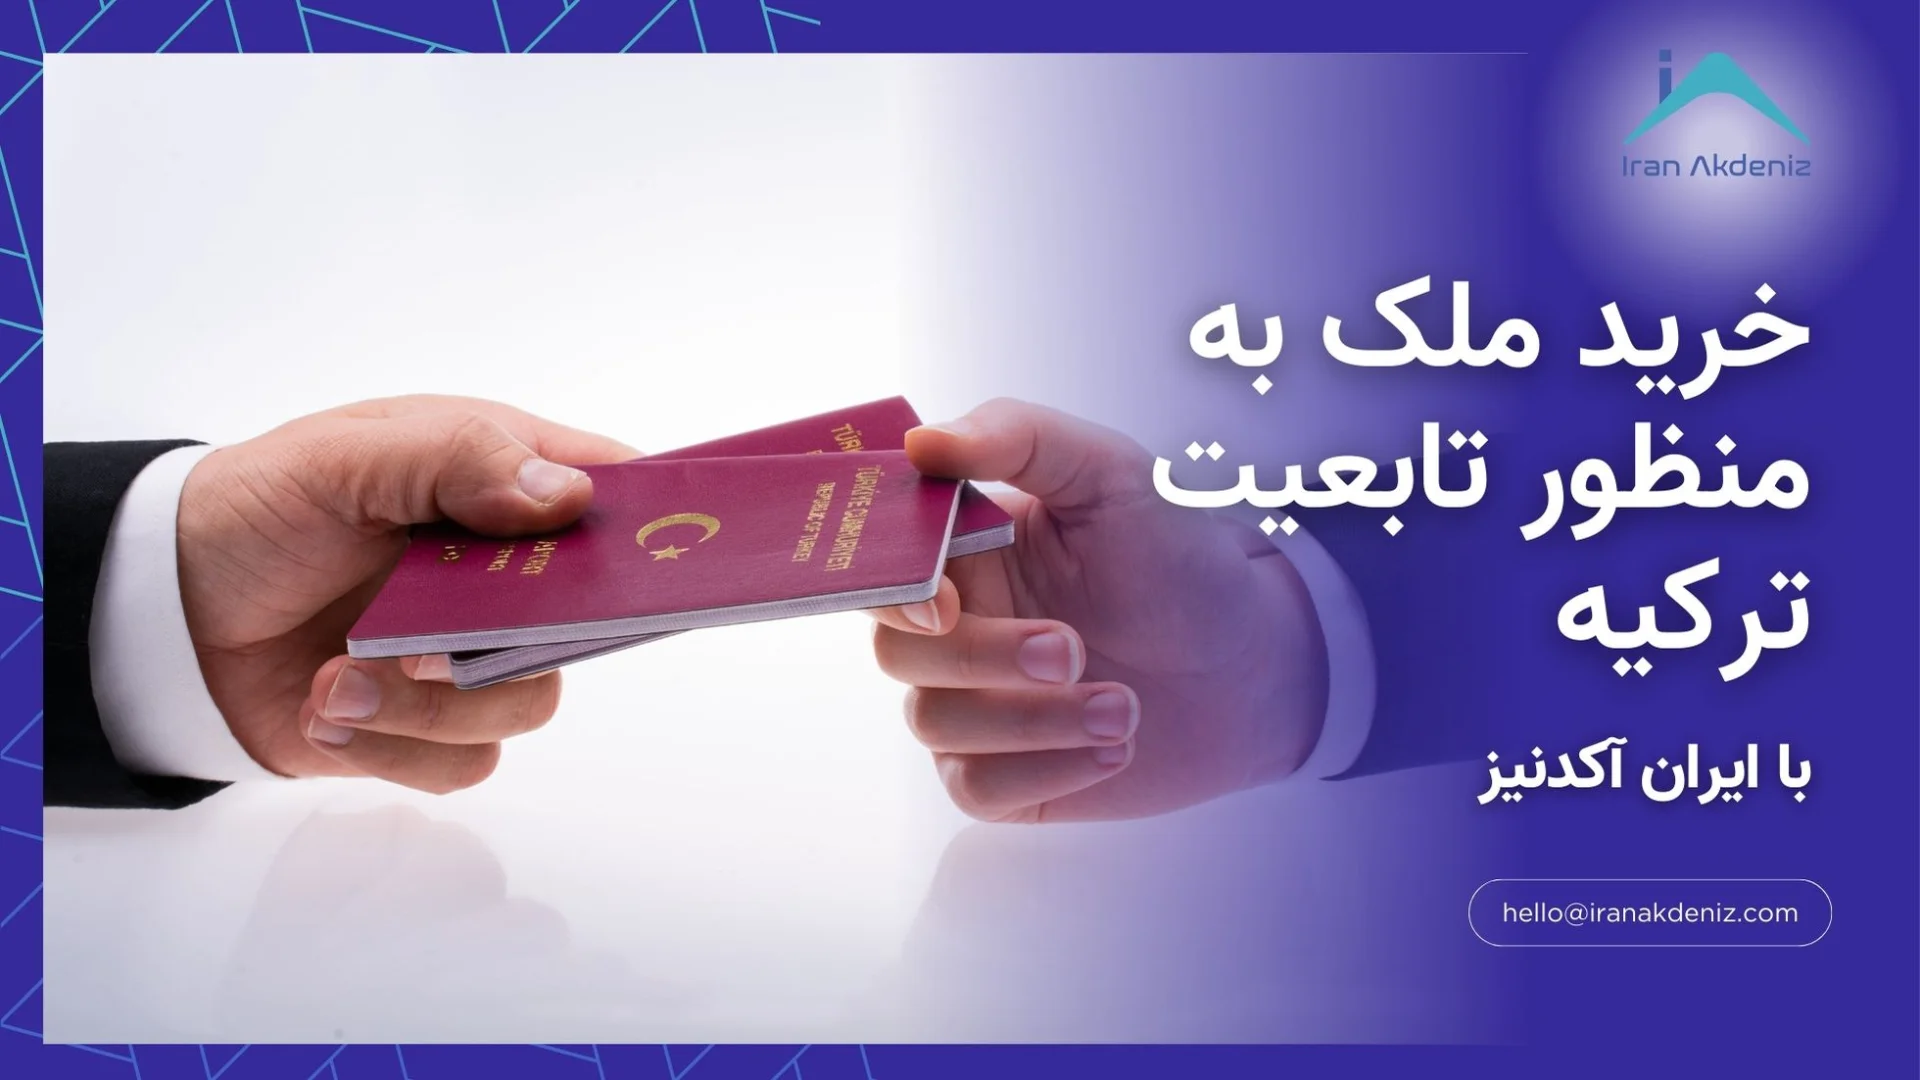 خرید ملک به منظور تابعیت ترکیه با کمک ایران آکدنیز و دریافت پاسپورت ترکیه